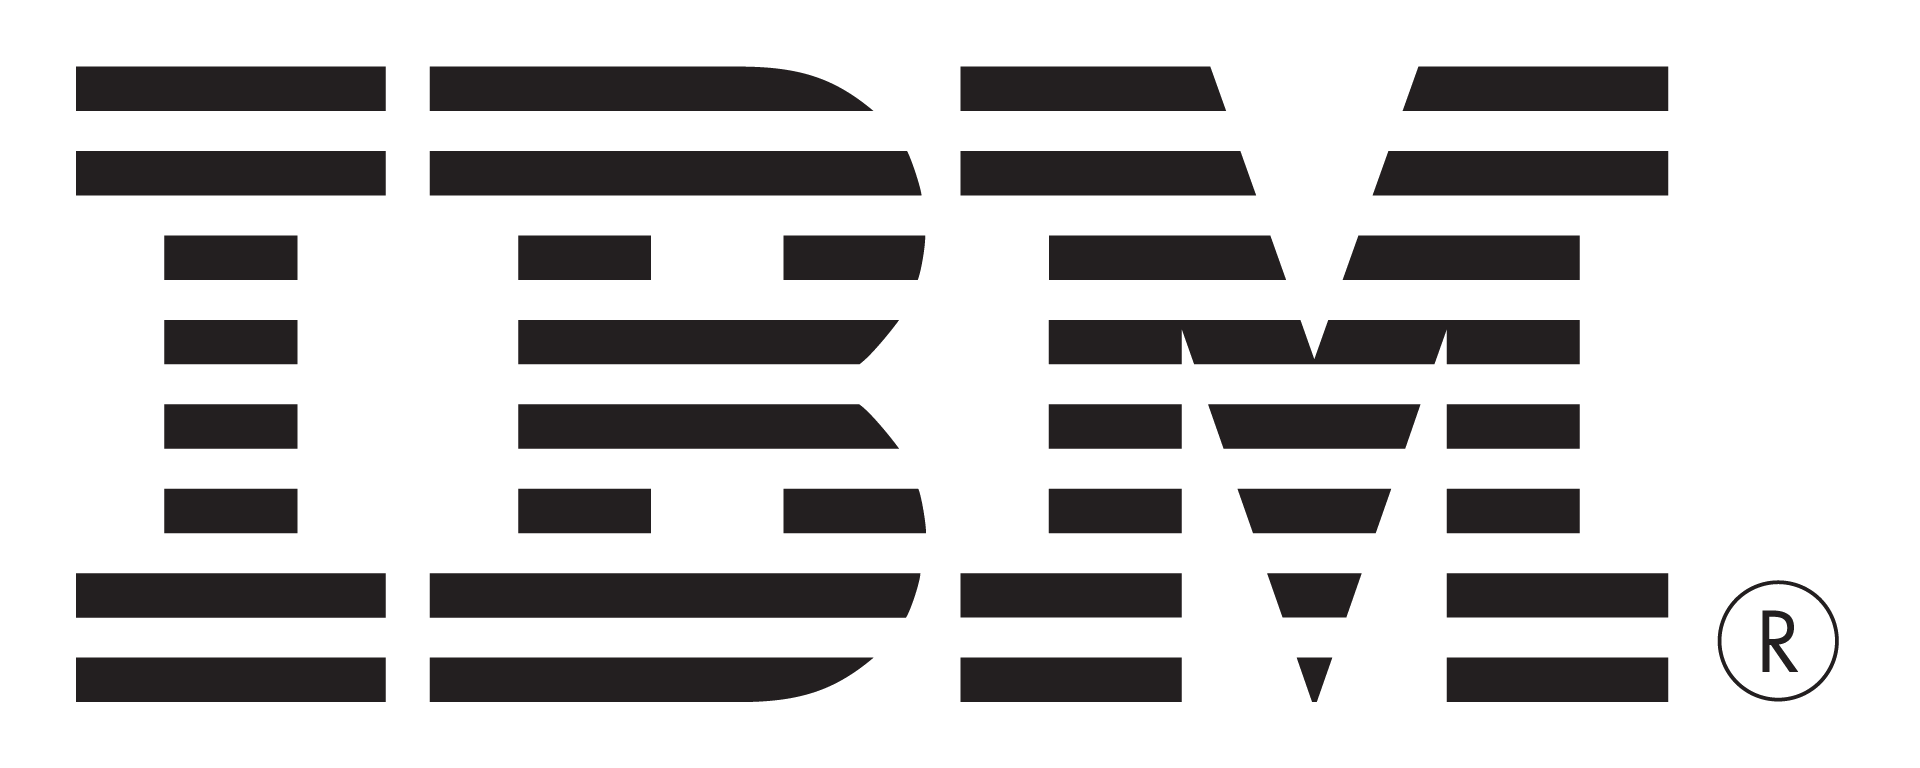 IBM logo PNG